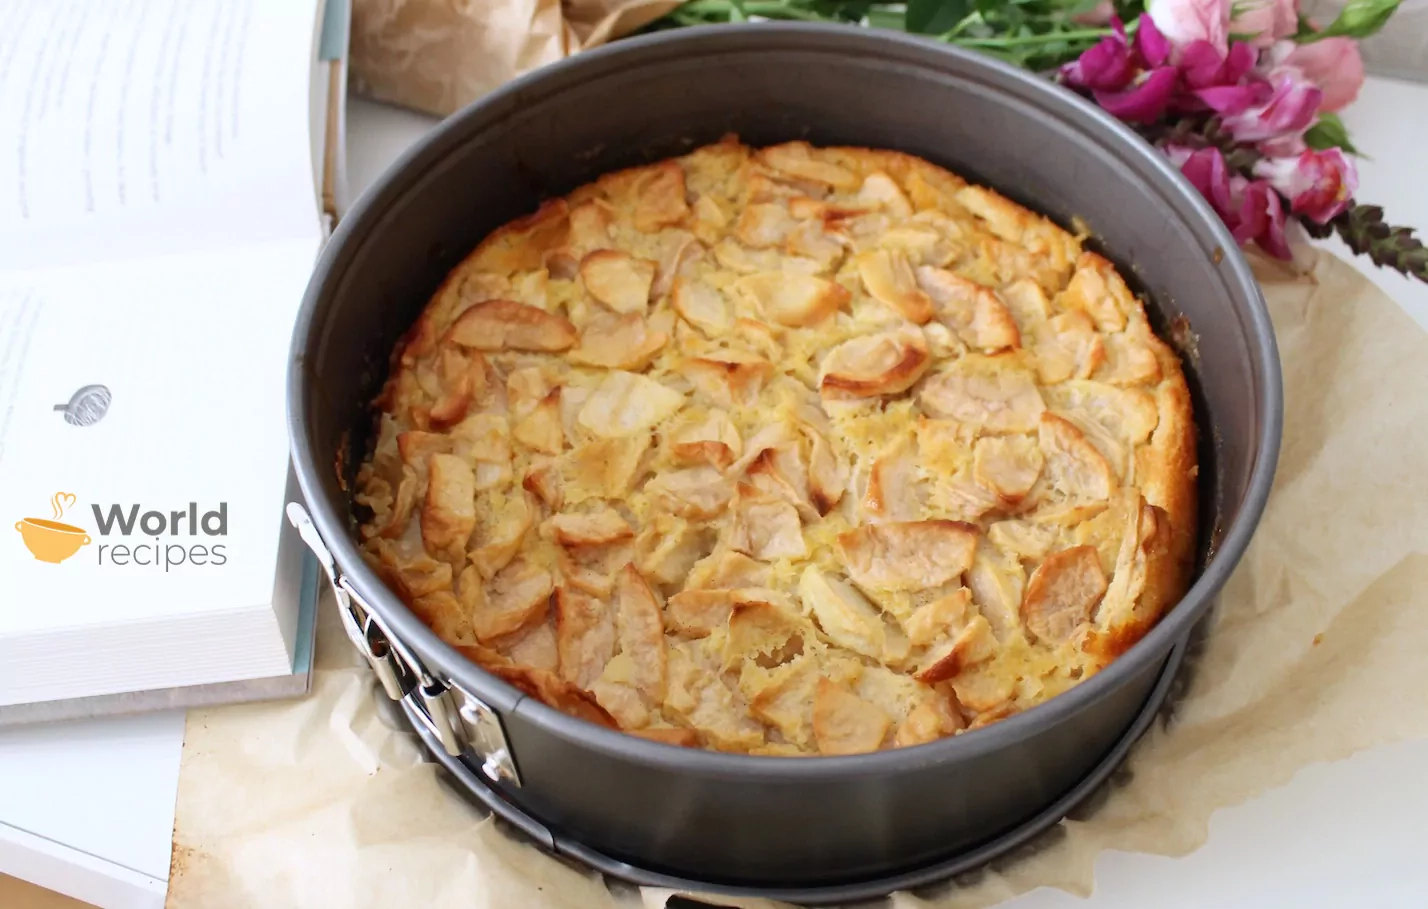 Marie-Helene obuolių pyragas su romu, sviestu ir vanile